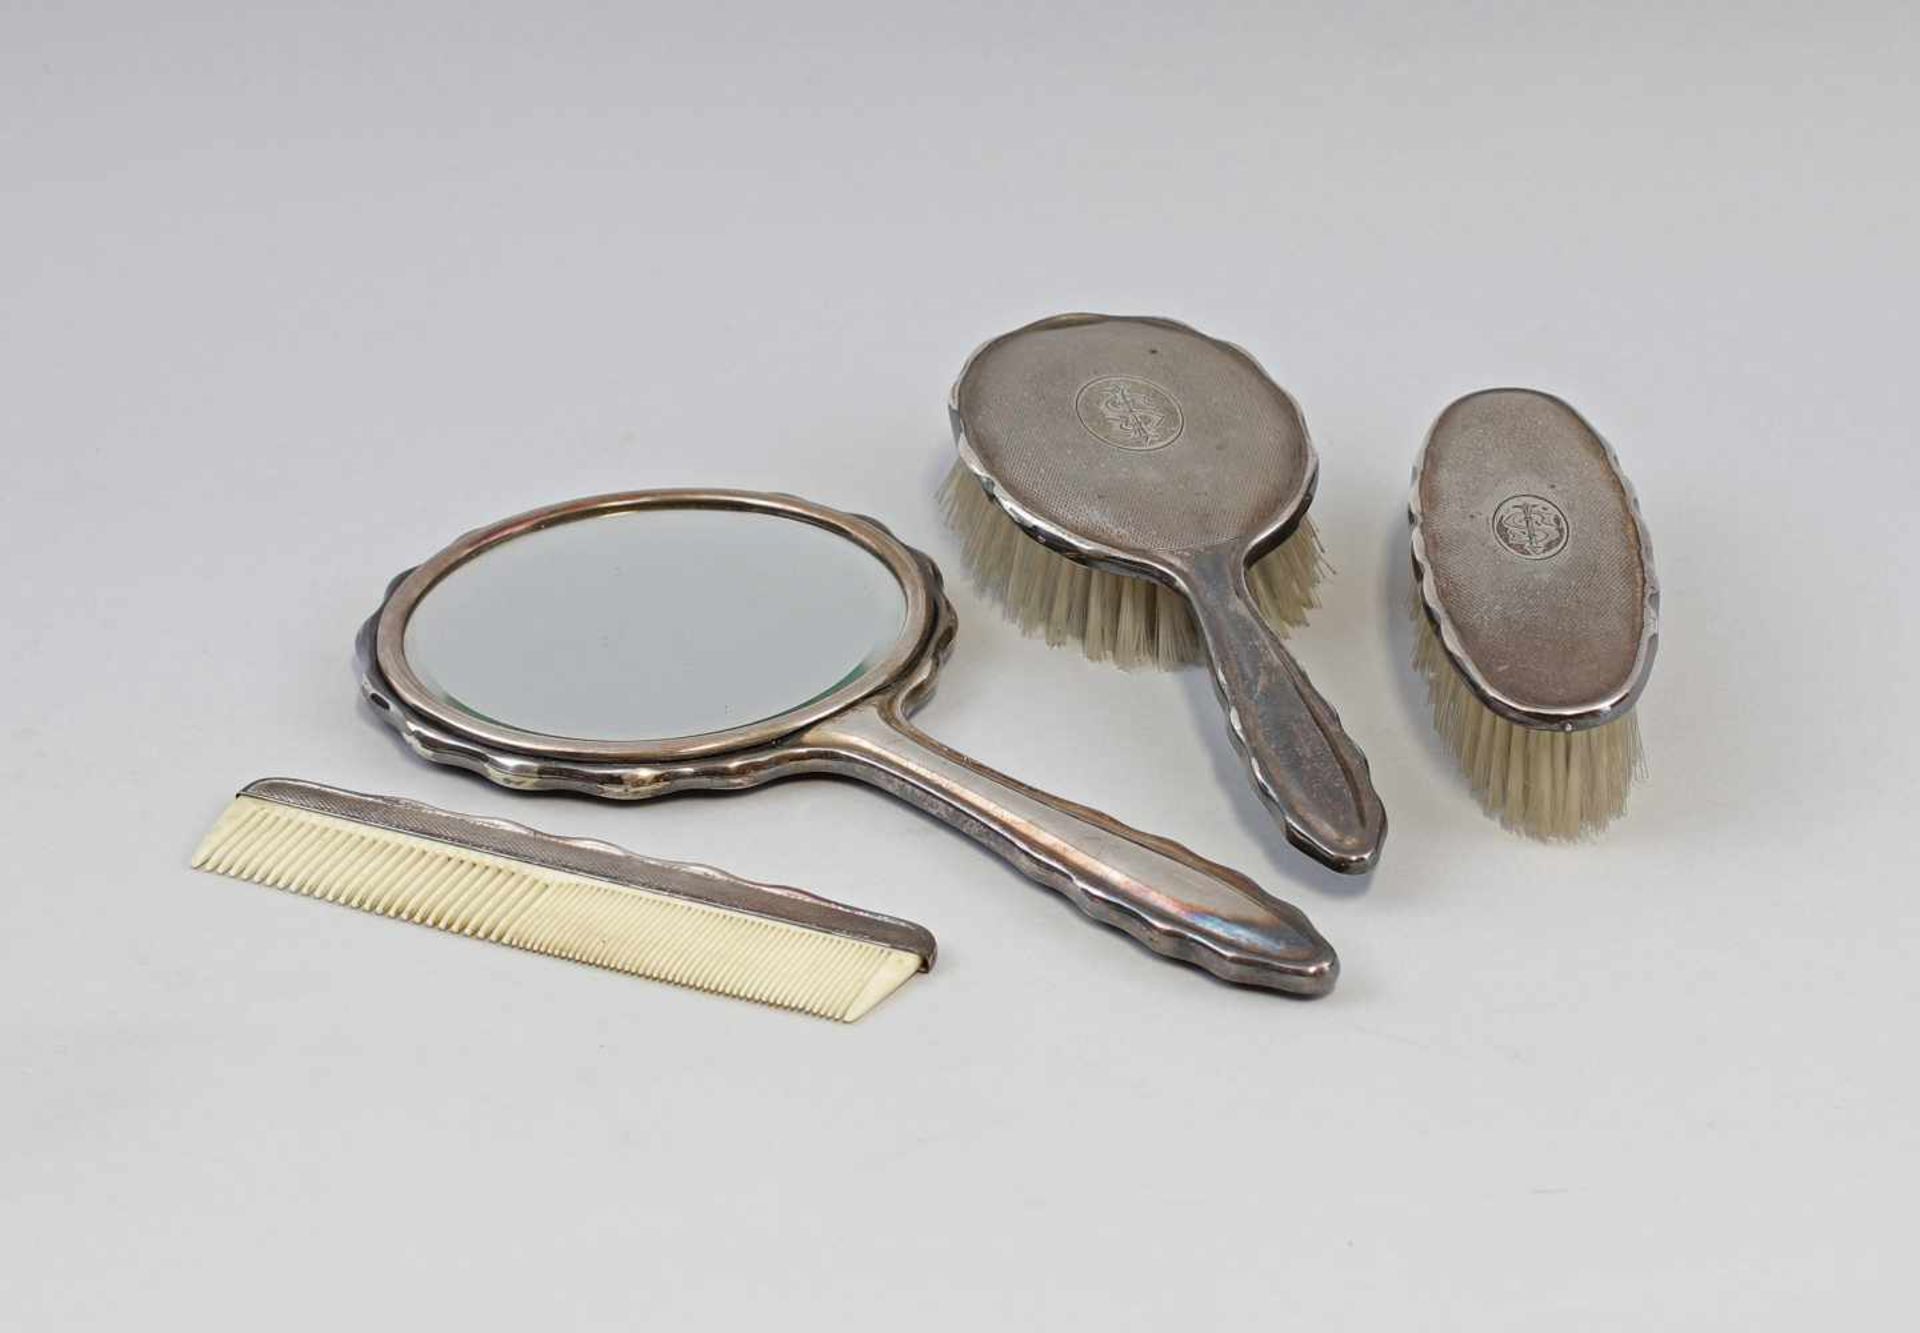 Silberne Toilettengarnitur 925er Silber, alle Teile gepunzt mit Halbmond und Krone, dabei Kamm (L 17